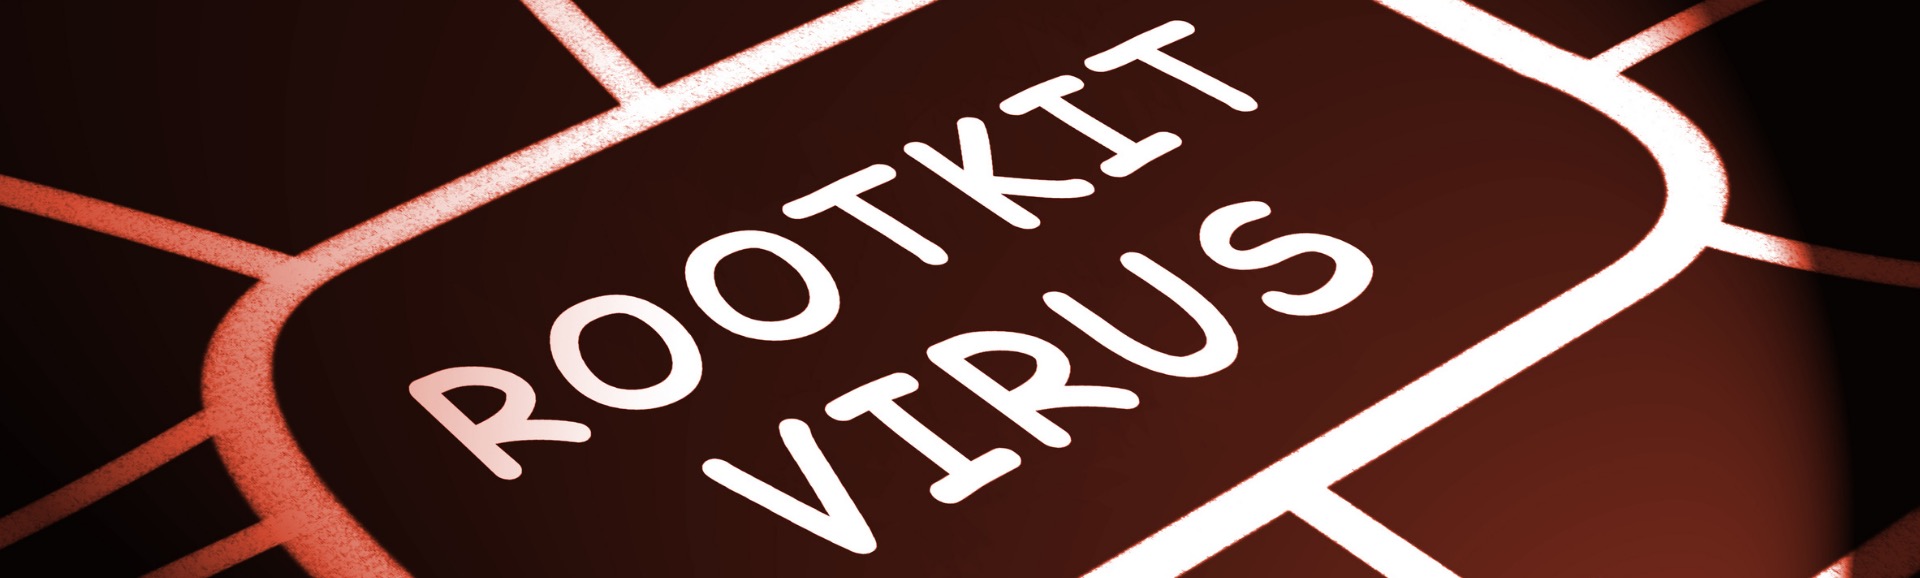 Rootkit-Virus